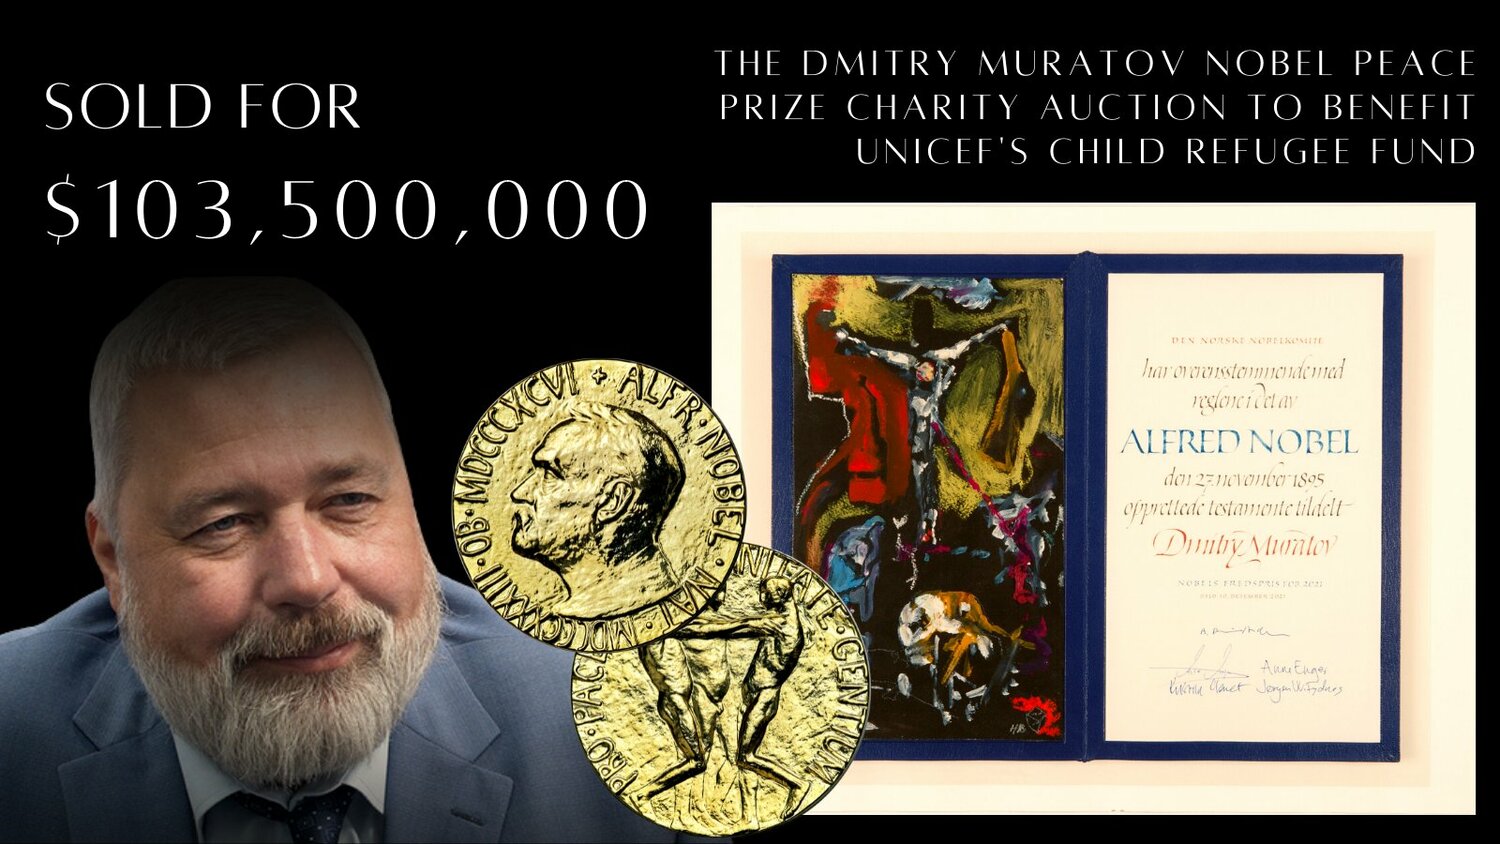 俄諾貝爾和平獎得主拍賣獎牌 30億元全數捐給烏克蘭難民兒童